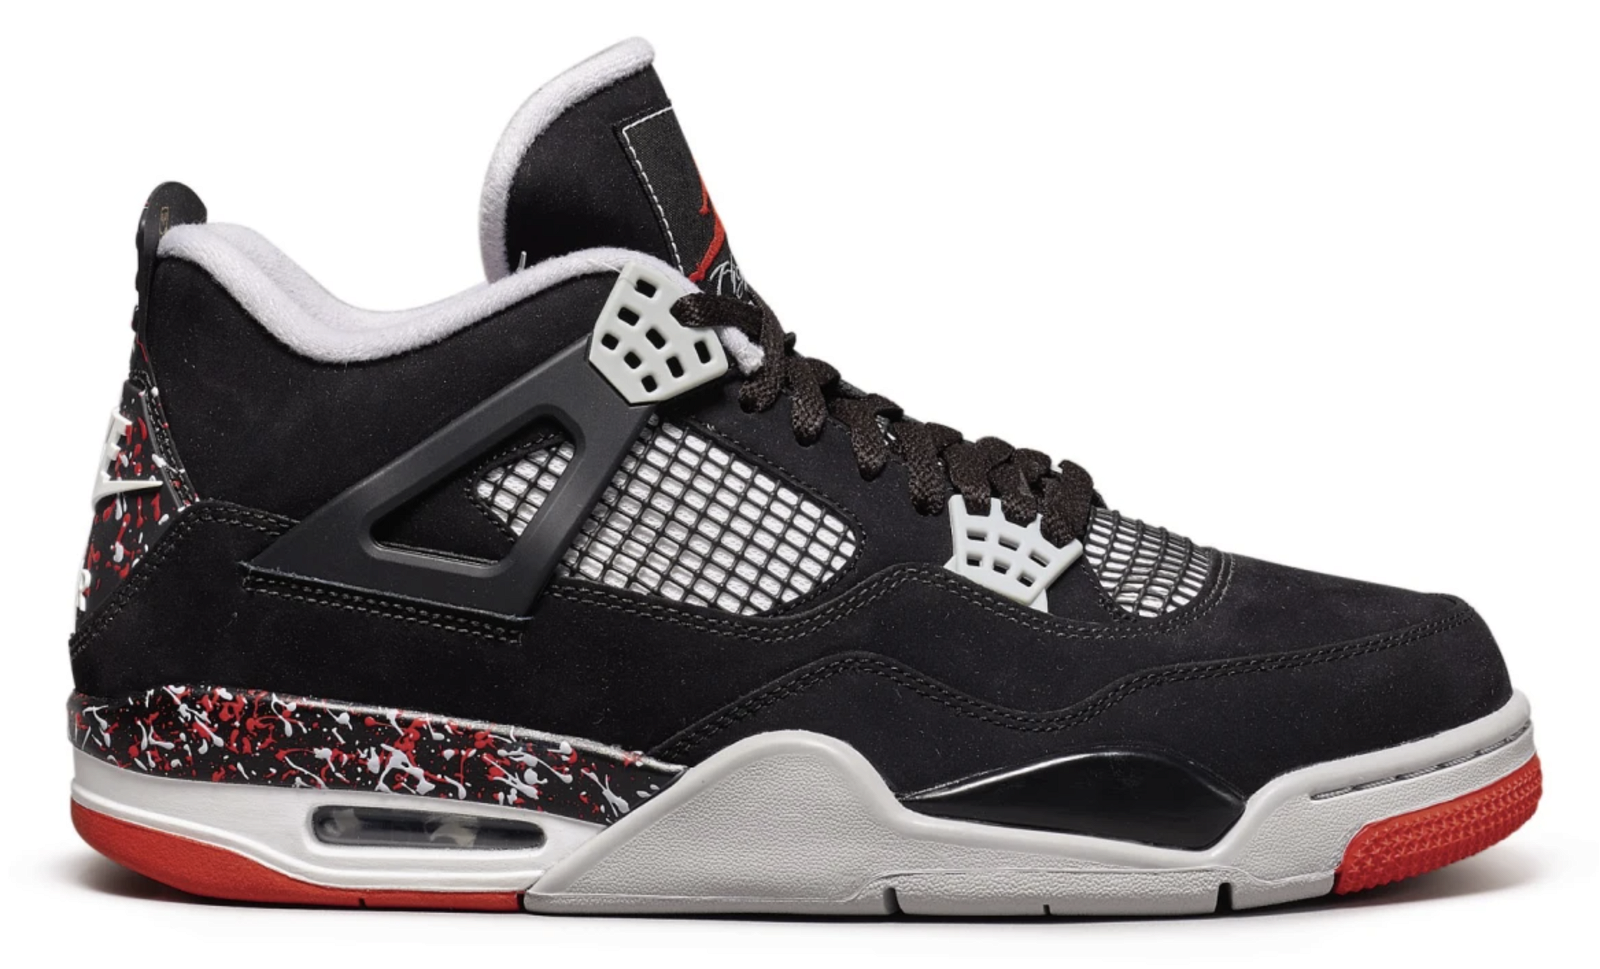 Jordan 4 Retro OVO Splatter (Sample) sneakers